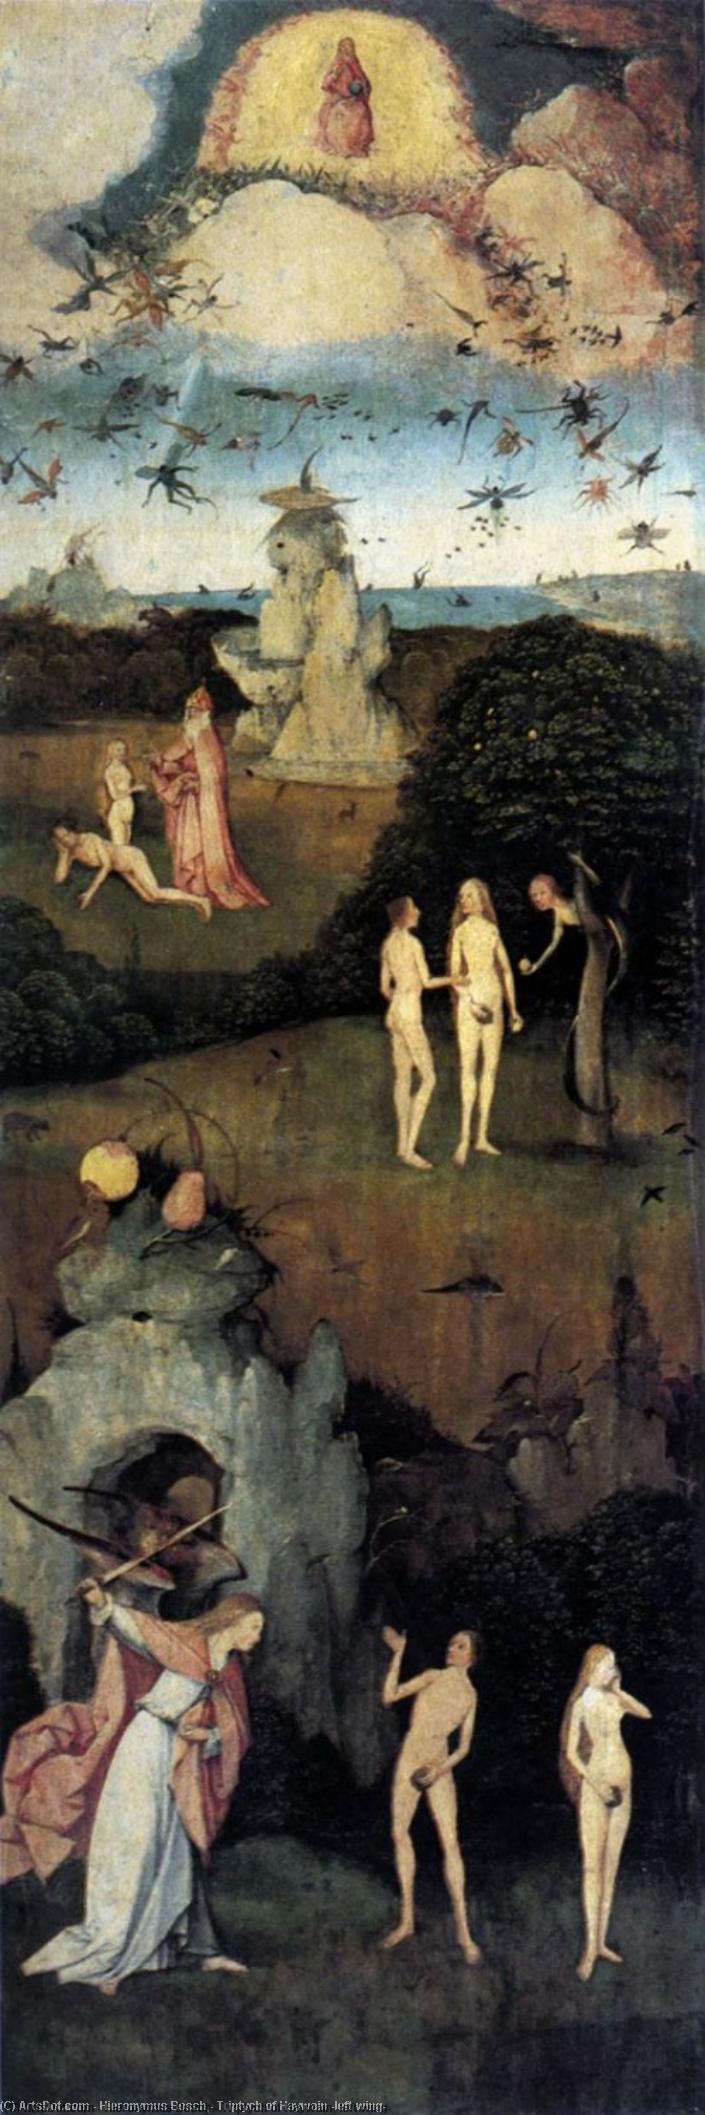 Wikioo.org - Encyklopedia Sztuk Pięknych - Malarstwo, Grafika Hieronymus Bosch - Triptych of Haywain (left wing)